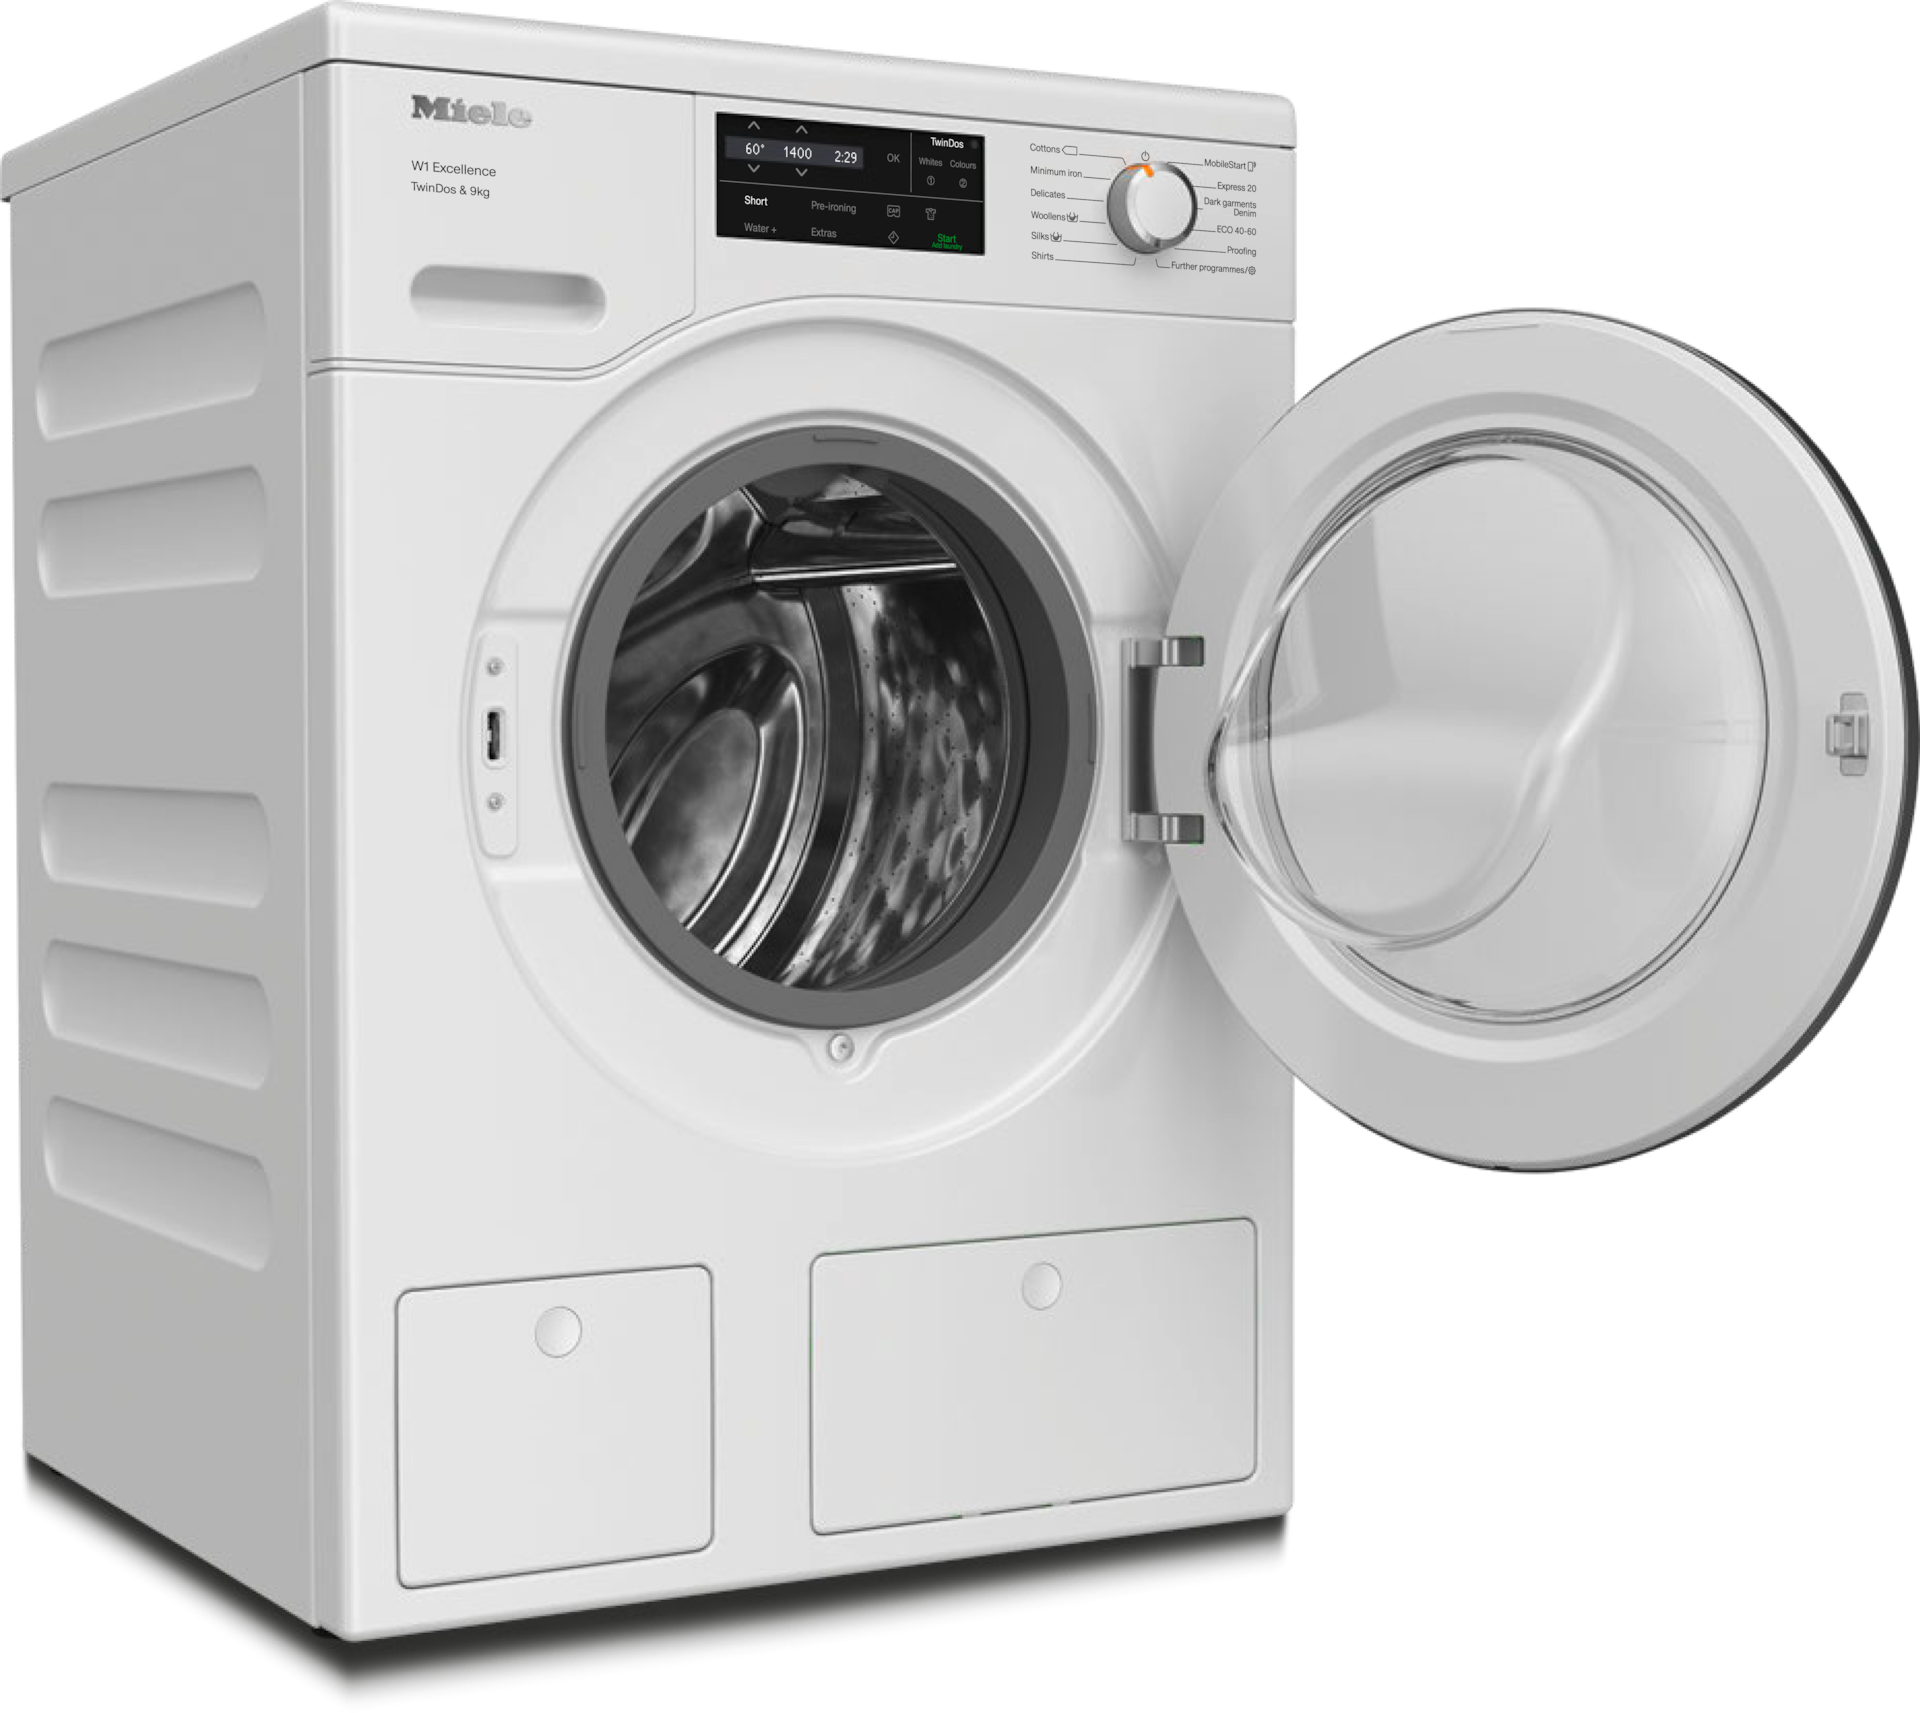 Washing machines - WEG665 WCS TDos&9kg Lotus white - 2